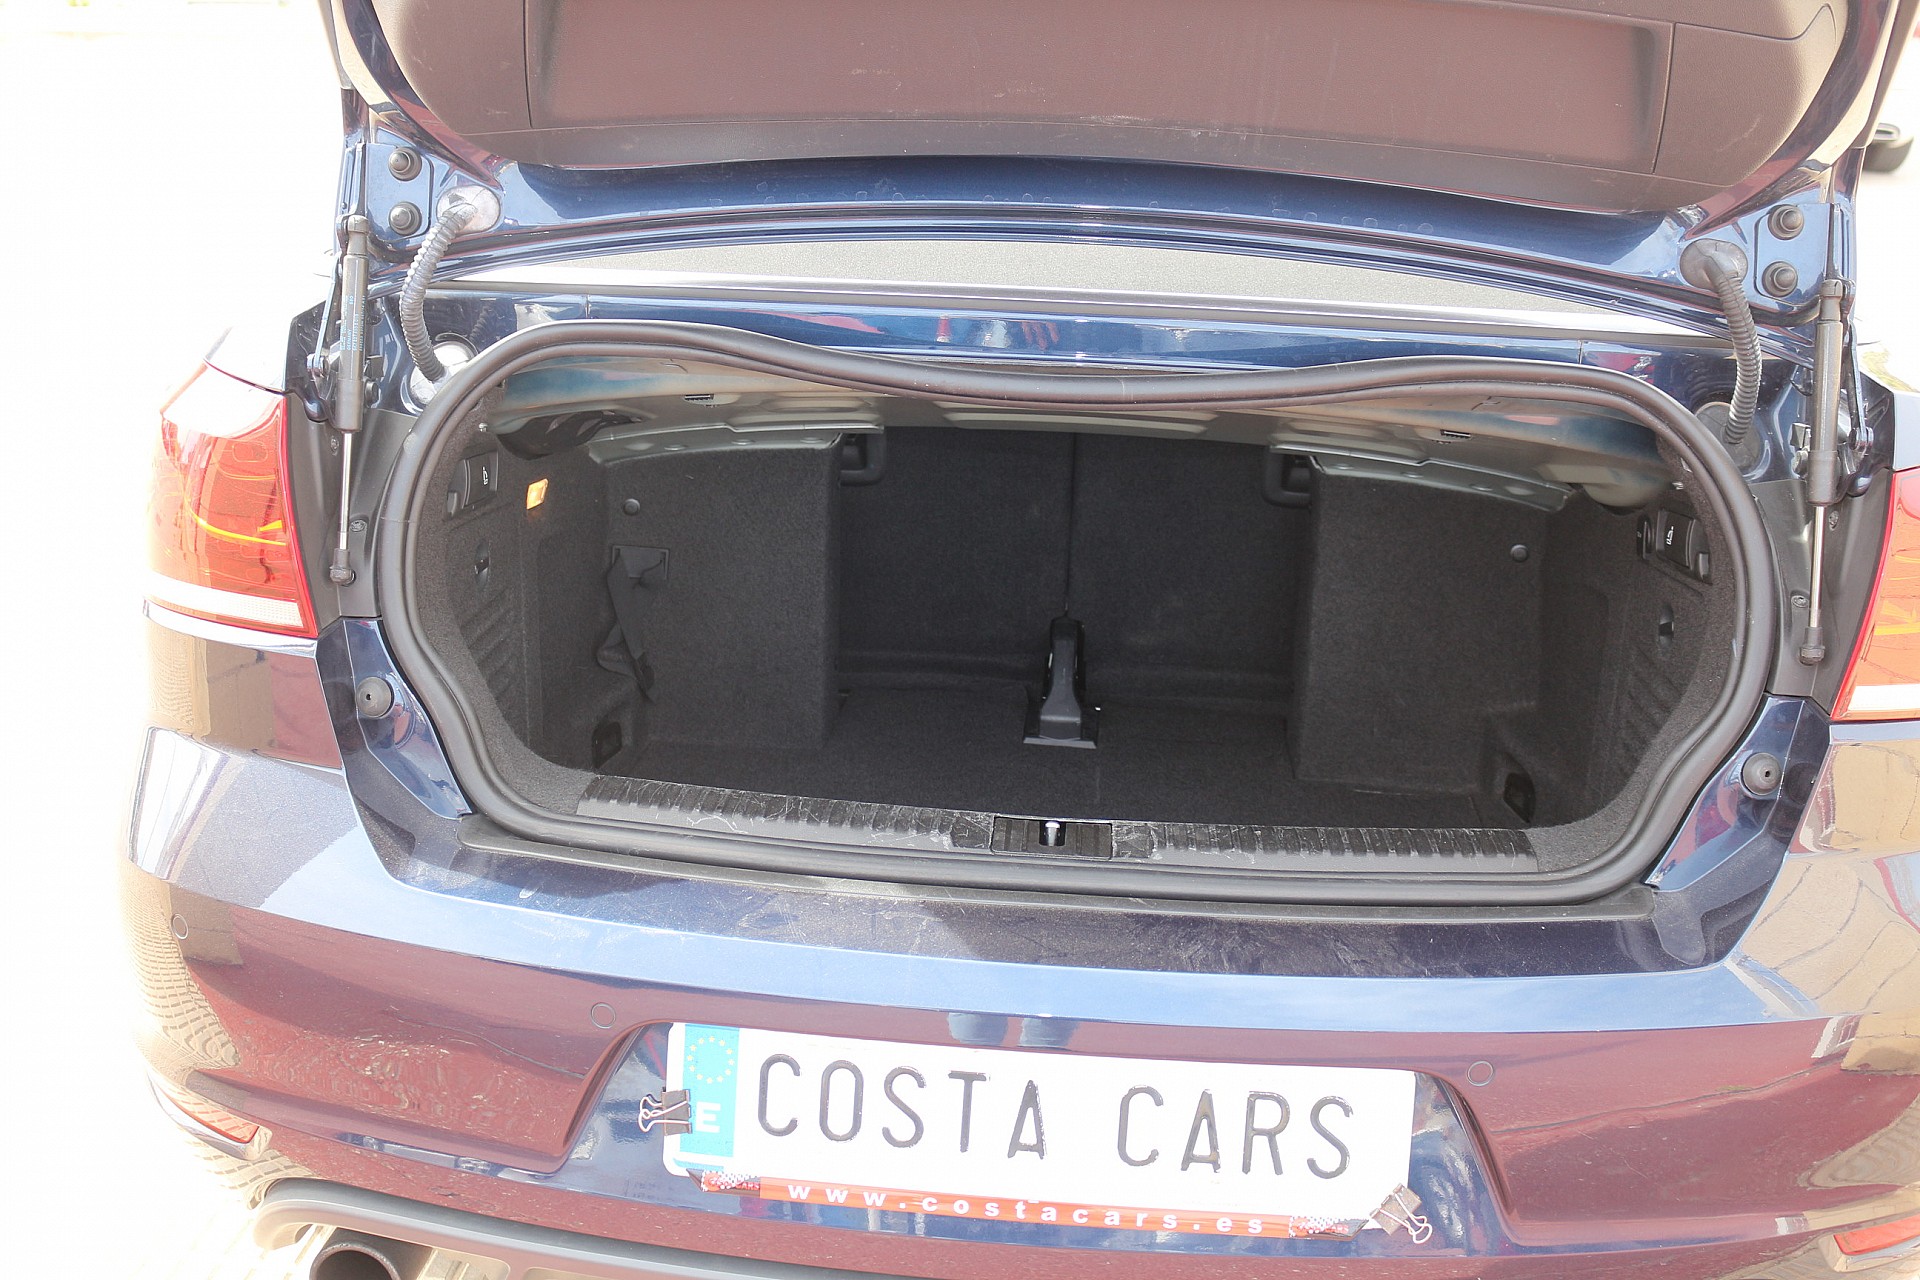 Volkswagen GOLF CABRIO 2.0TSI  - Costa Cars